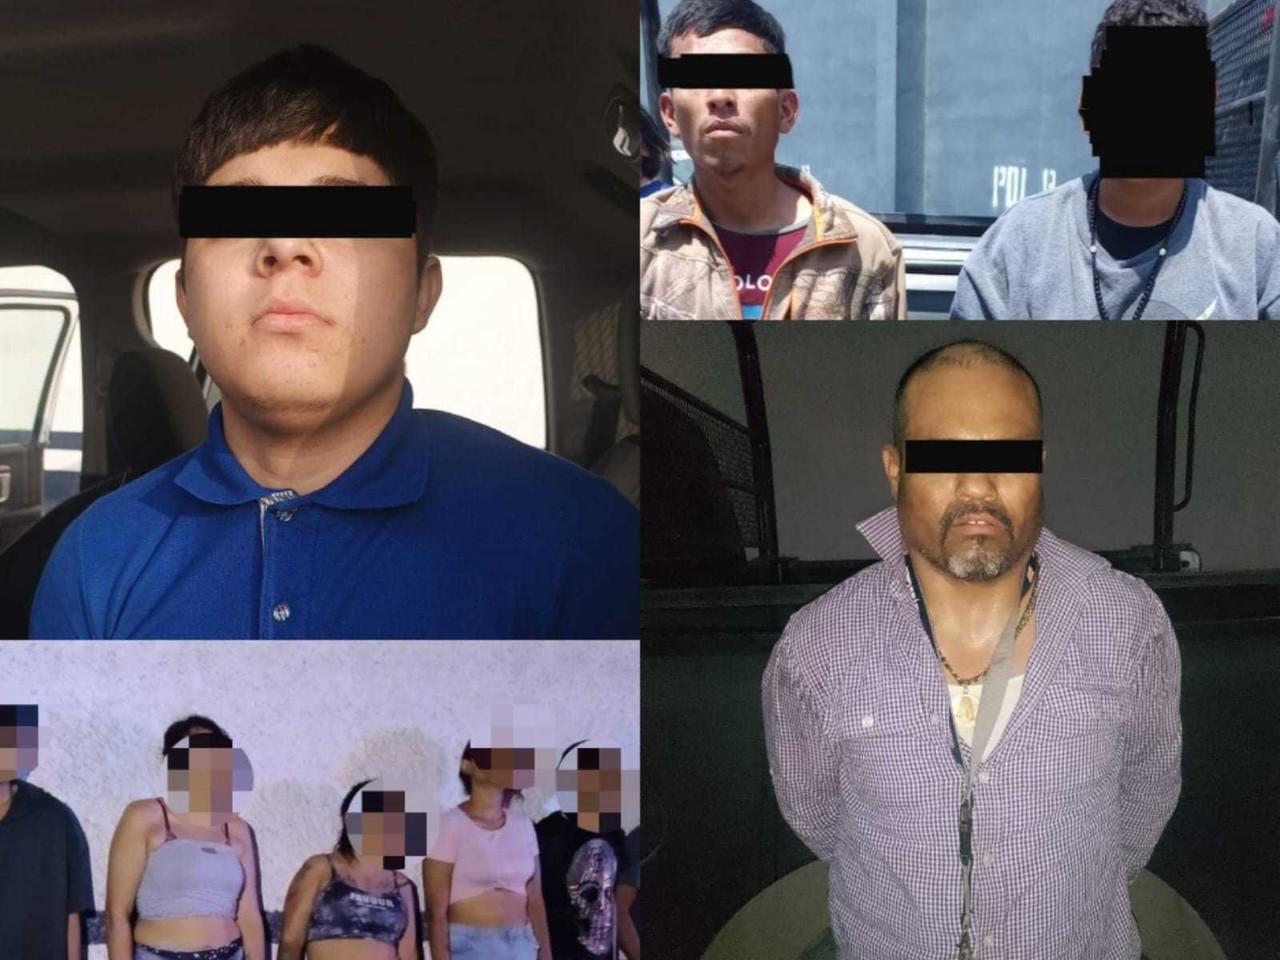 Los once detenidos fueron puestos a disposición del Ministerio Público. Foto: Policía de García.